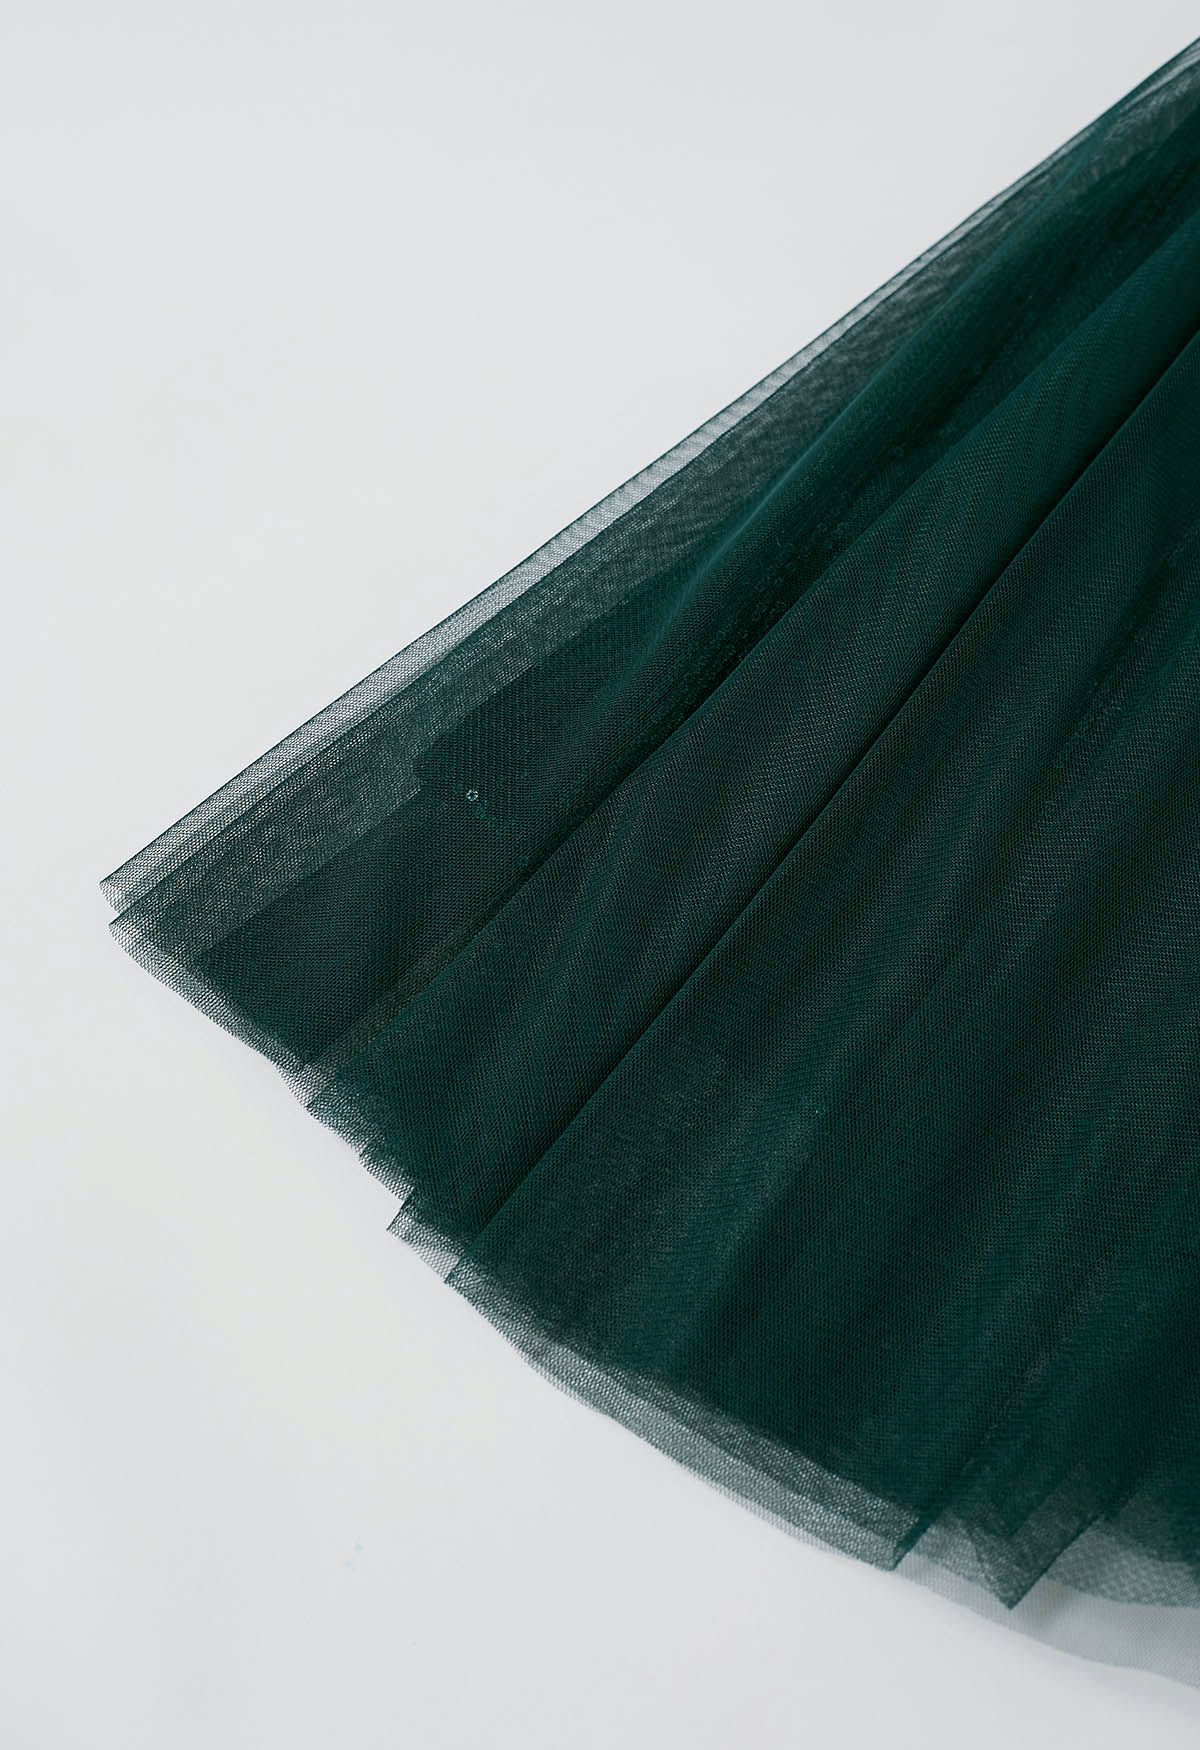 Ravishing Sequins Mesh Tulle Midi Skirt in Dark Green